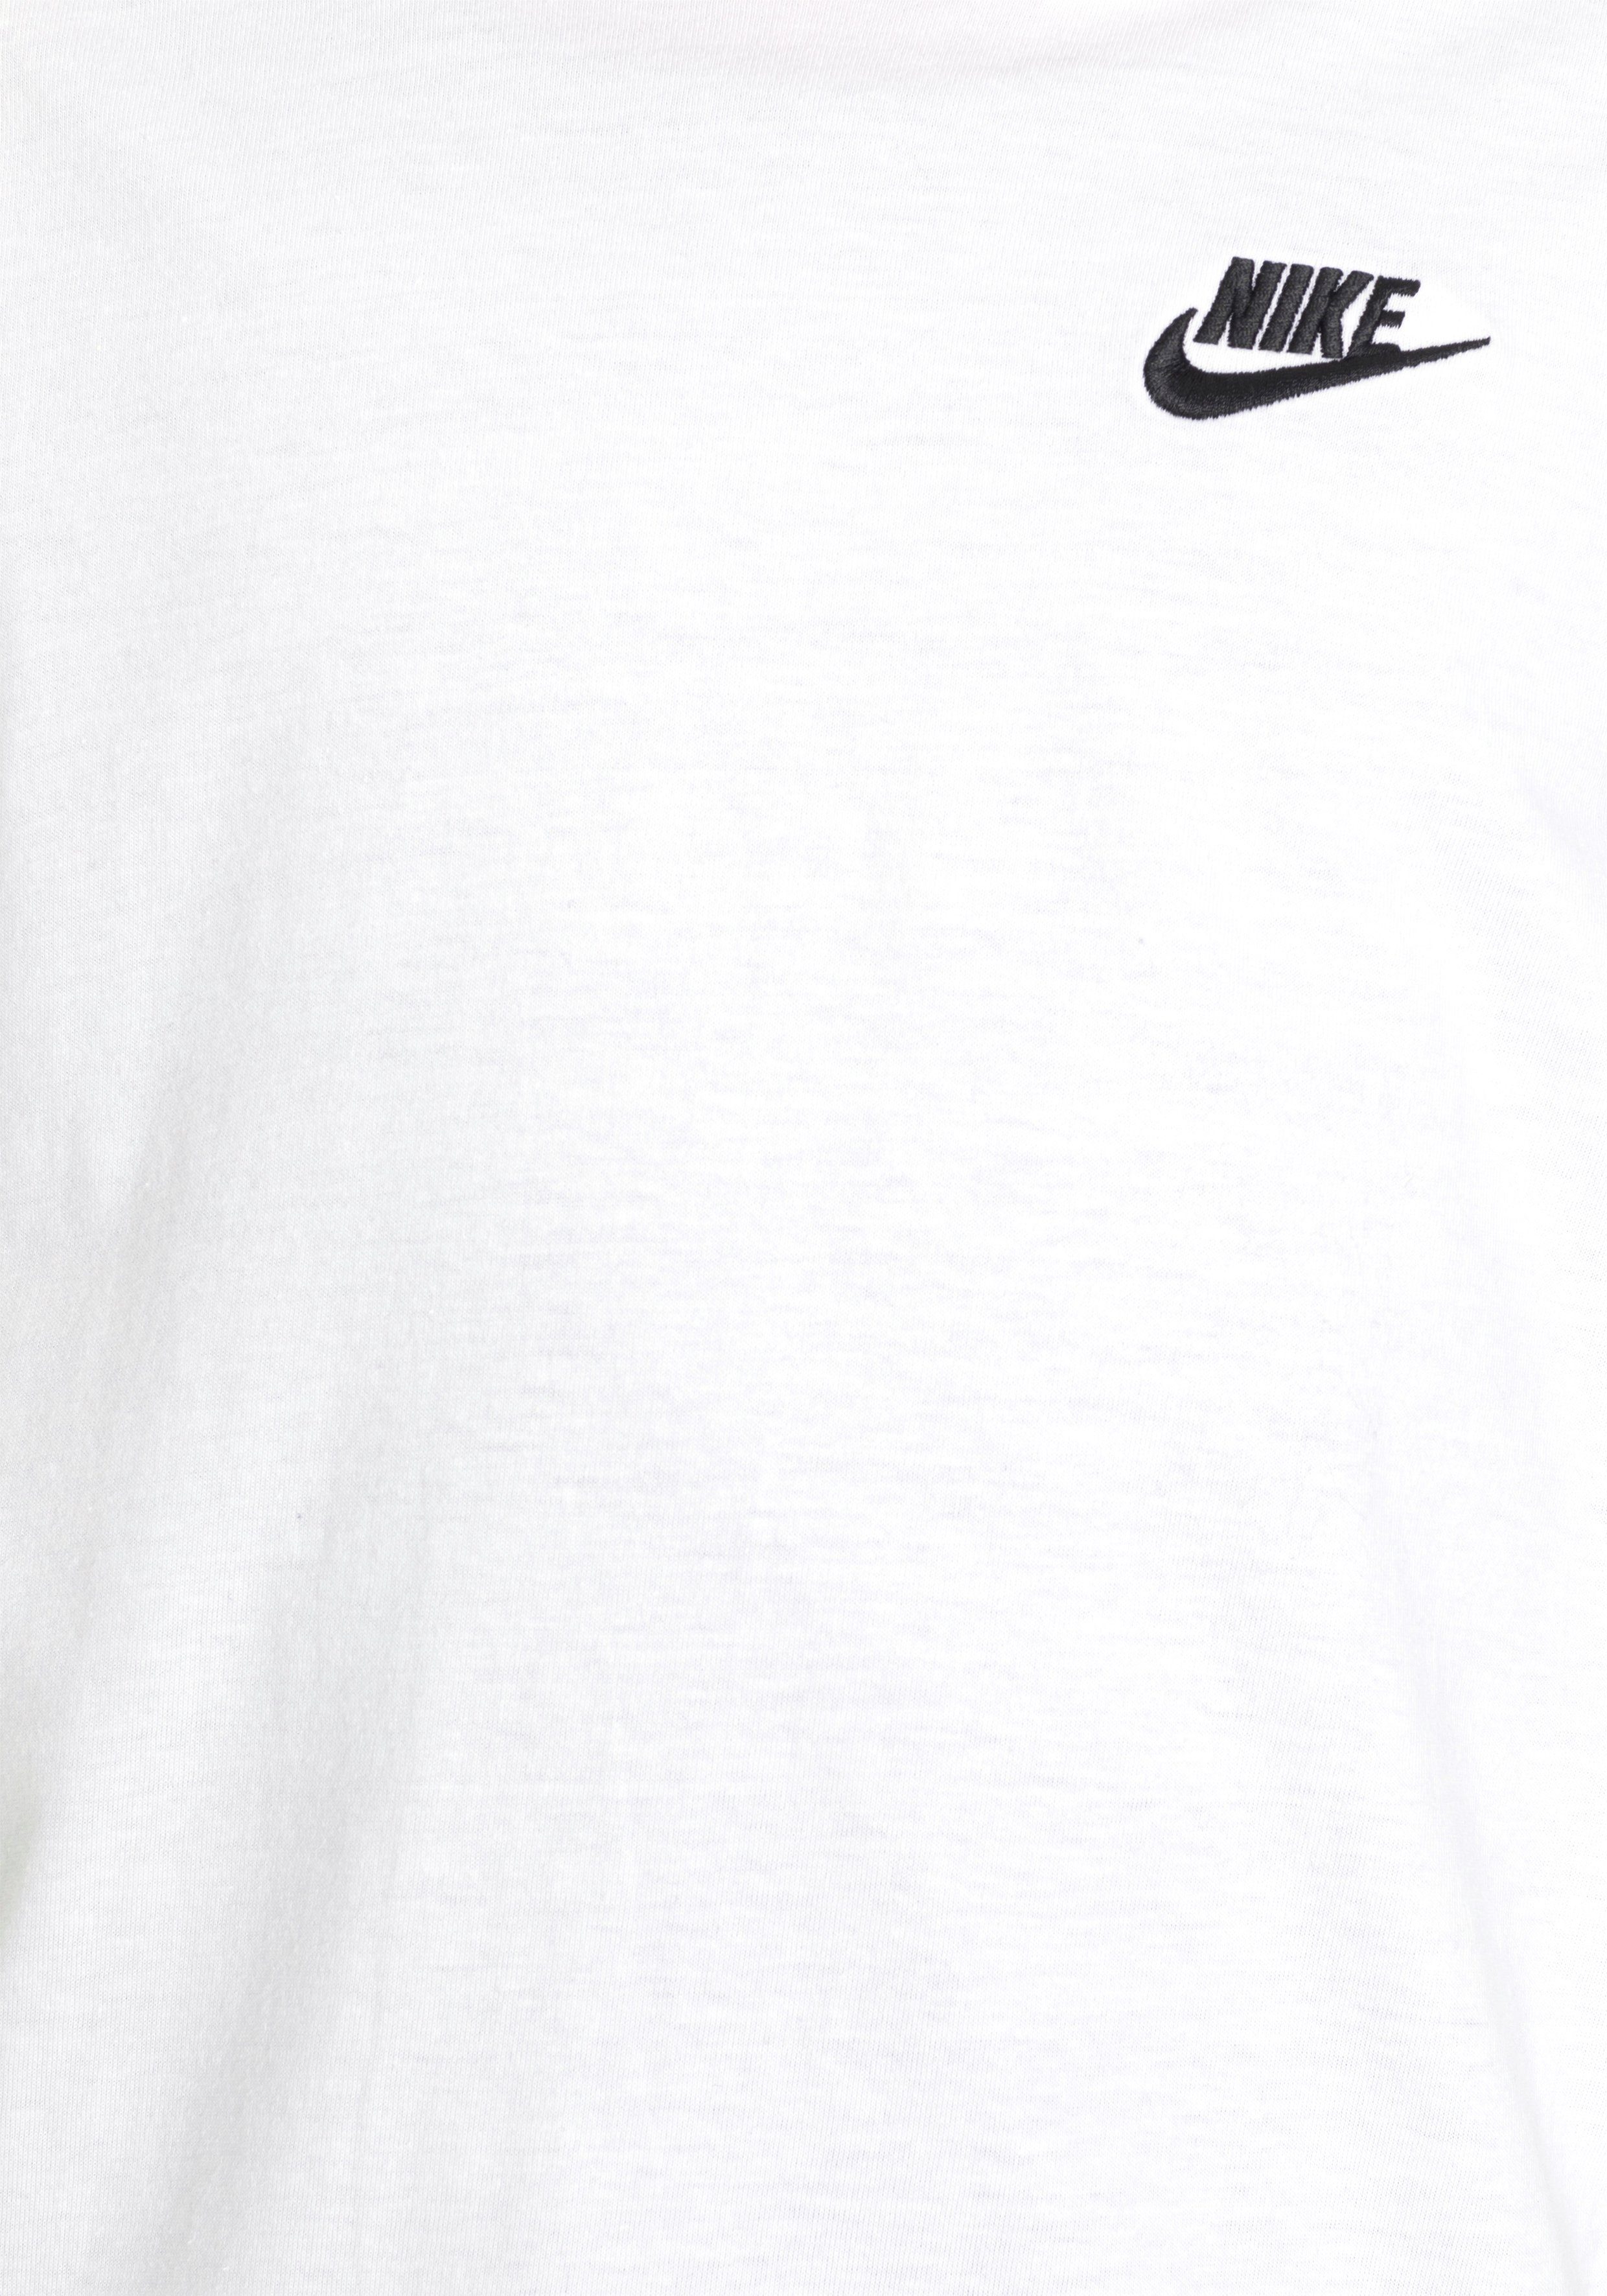 KIDS' weiß T-Shirt T-SHIRT Nike Sportswear BIG